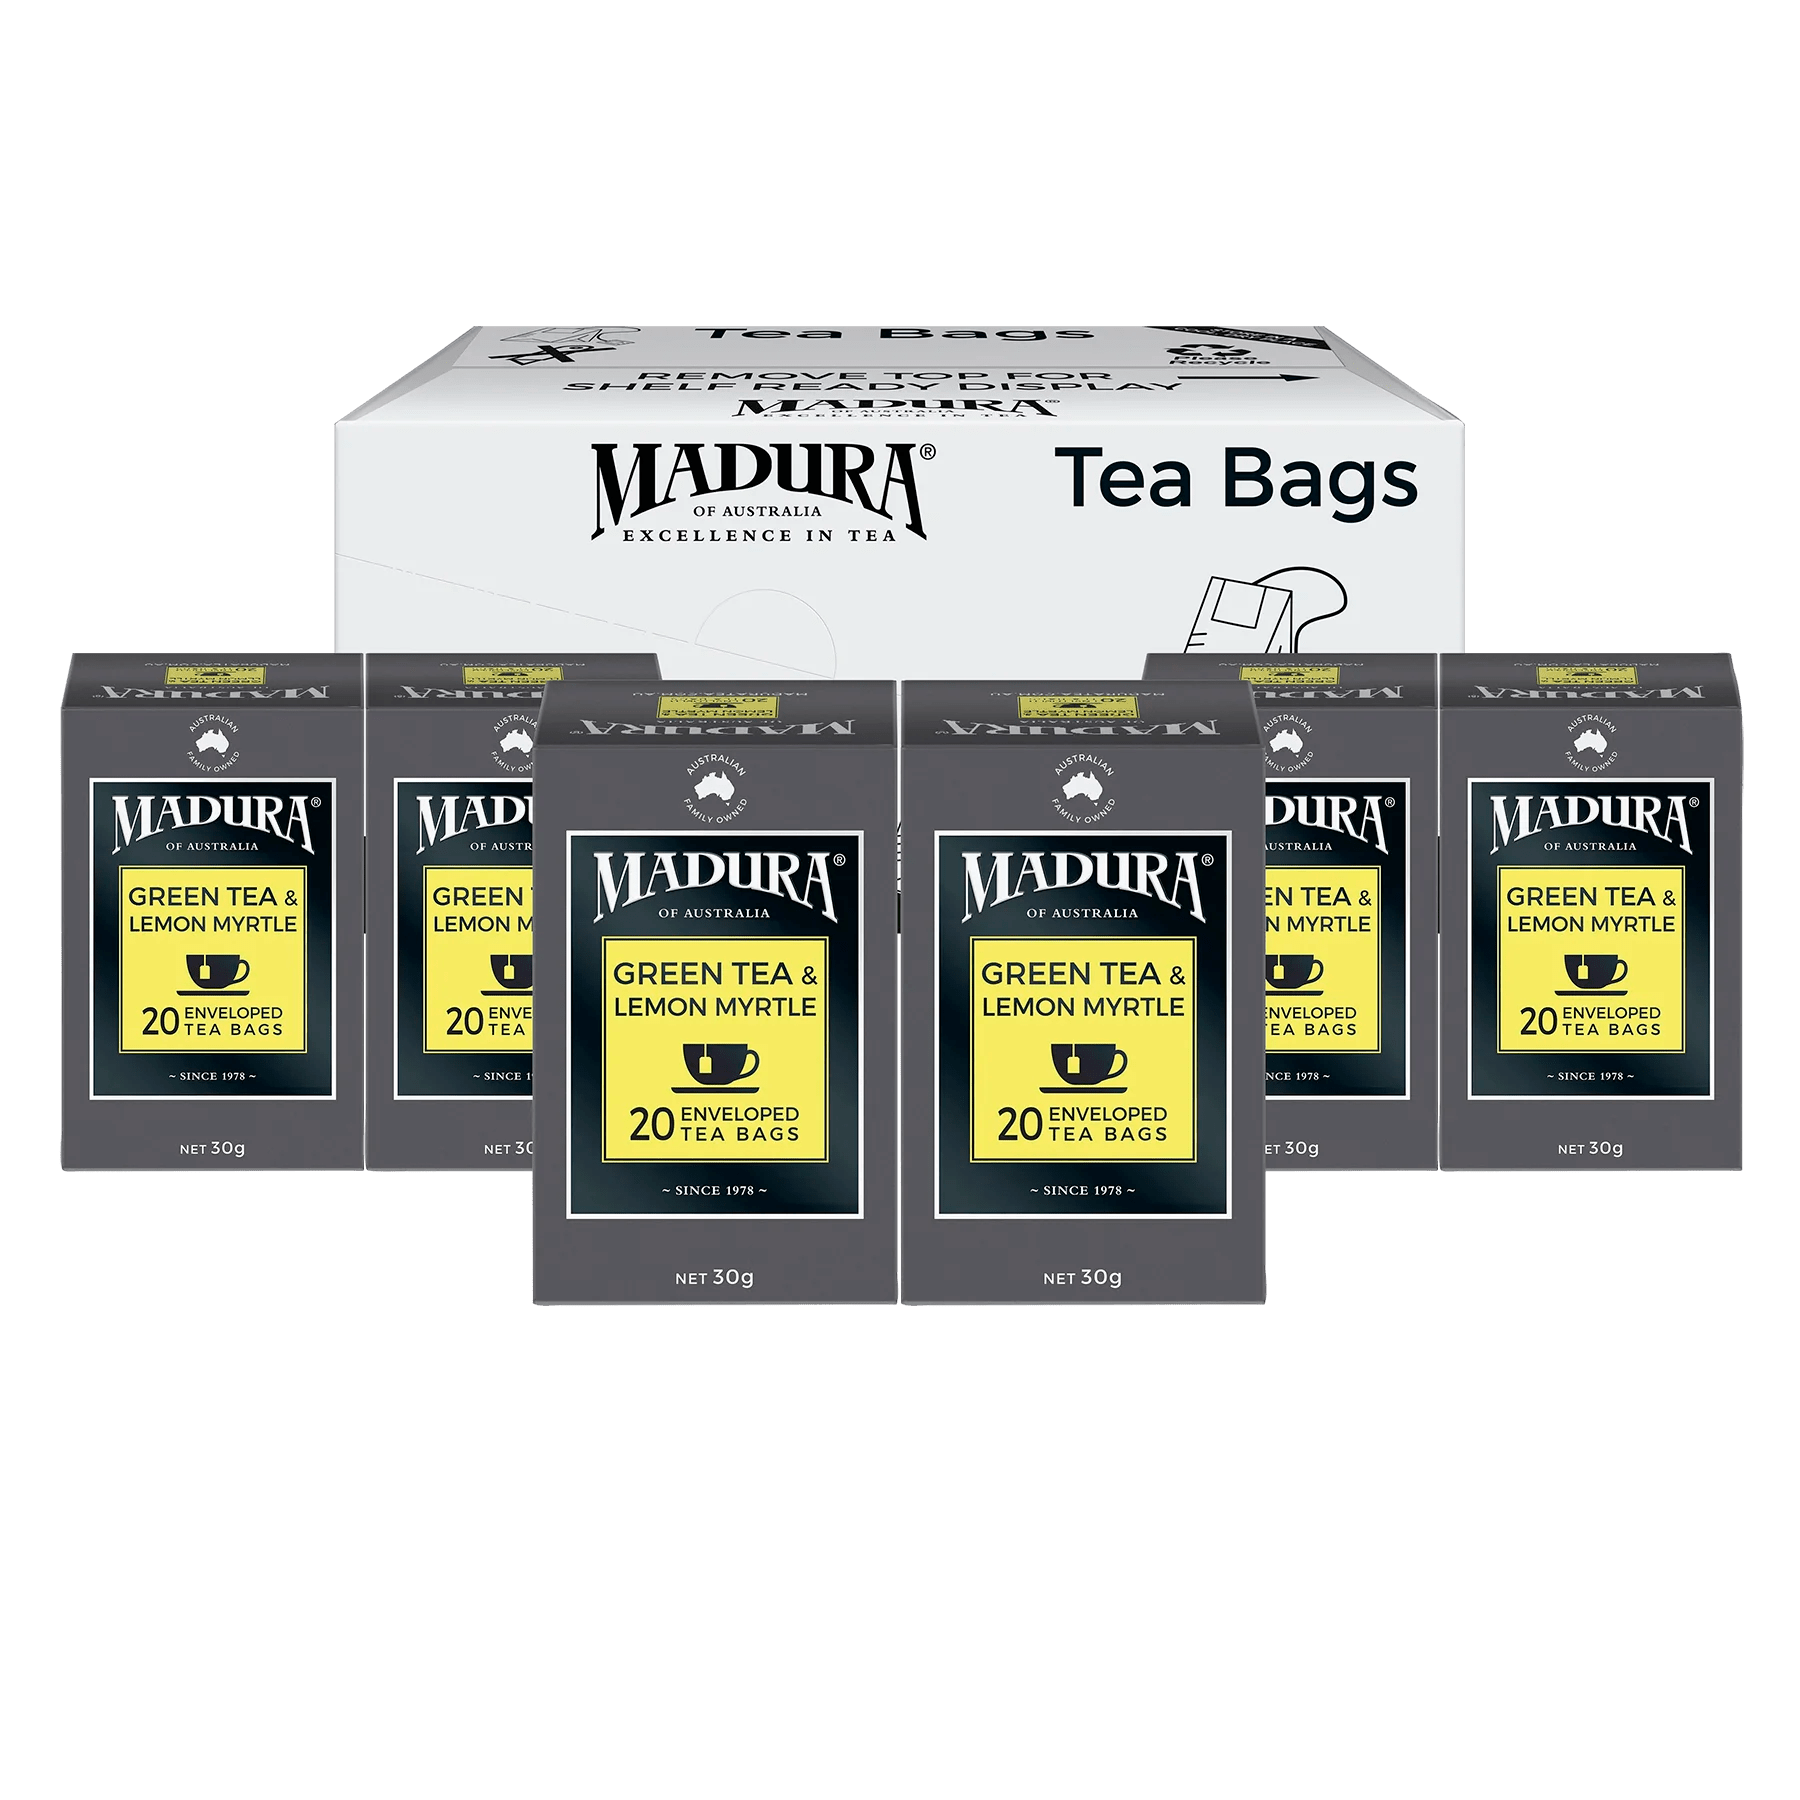 Green Tea & Australian Lemon Myrtle 20 Enveloped Tea Bags - Madura Tea